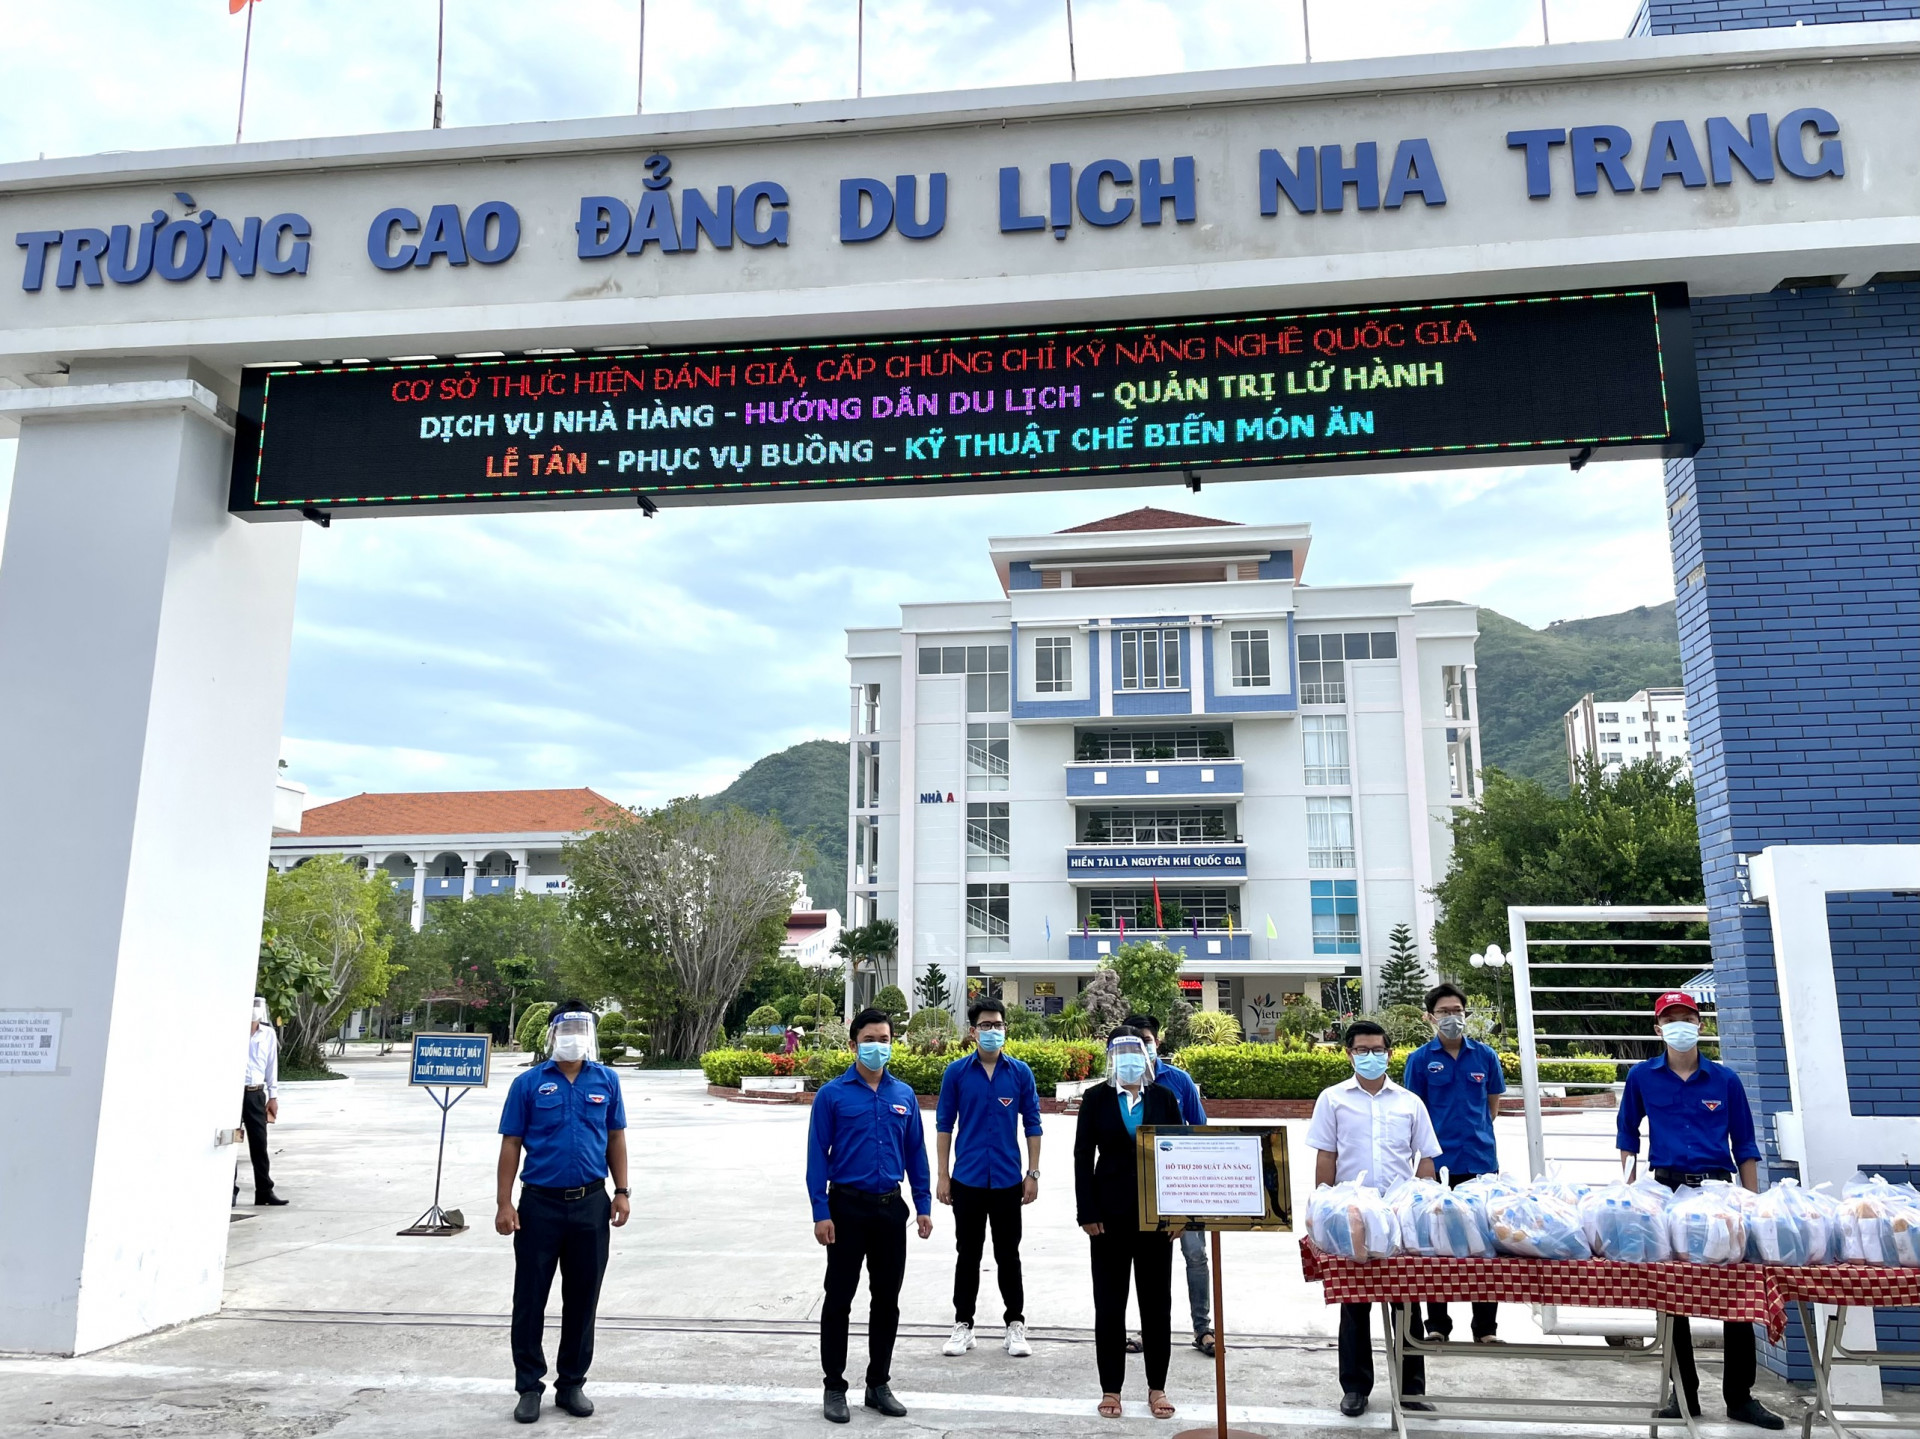 Trường Cao đẳng Du lịch Nha Trang hỗ trợ suất ăn cho người dân các khu cách  ly, phong tỏa - Báo Khánh Hòa điện tử